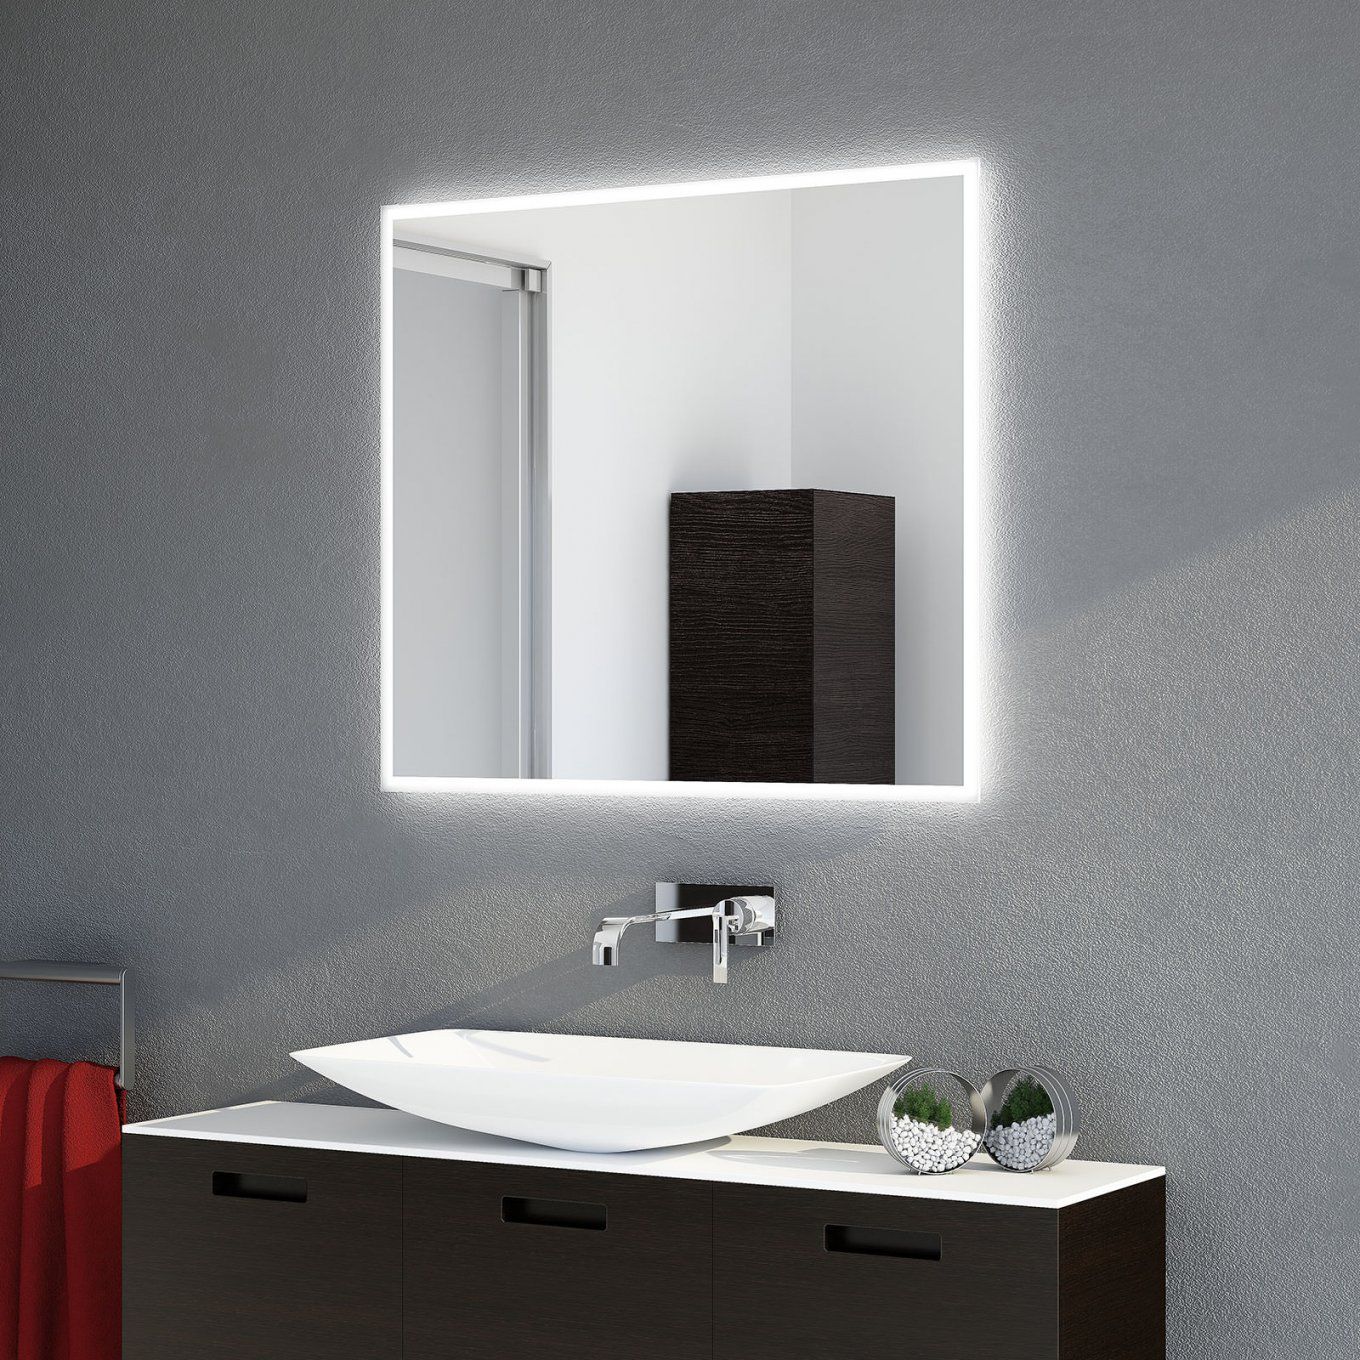 Badspiegel Nach Maß Und Hochwertige Badbeleuchtung Ab Werk von Led Spiegel Mit Steckdose Photo